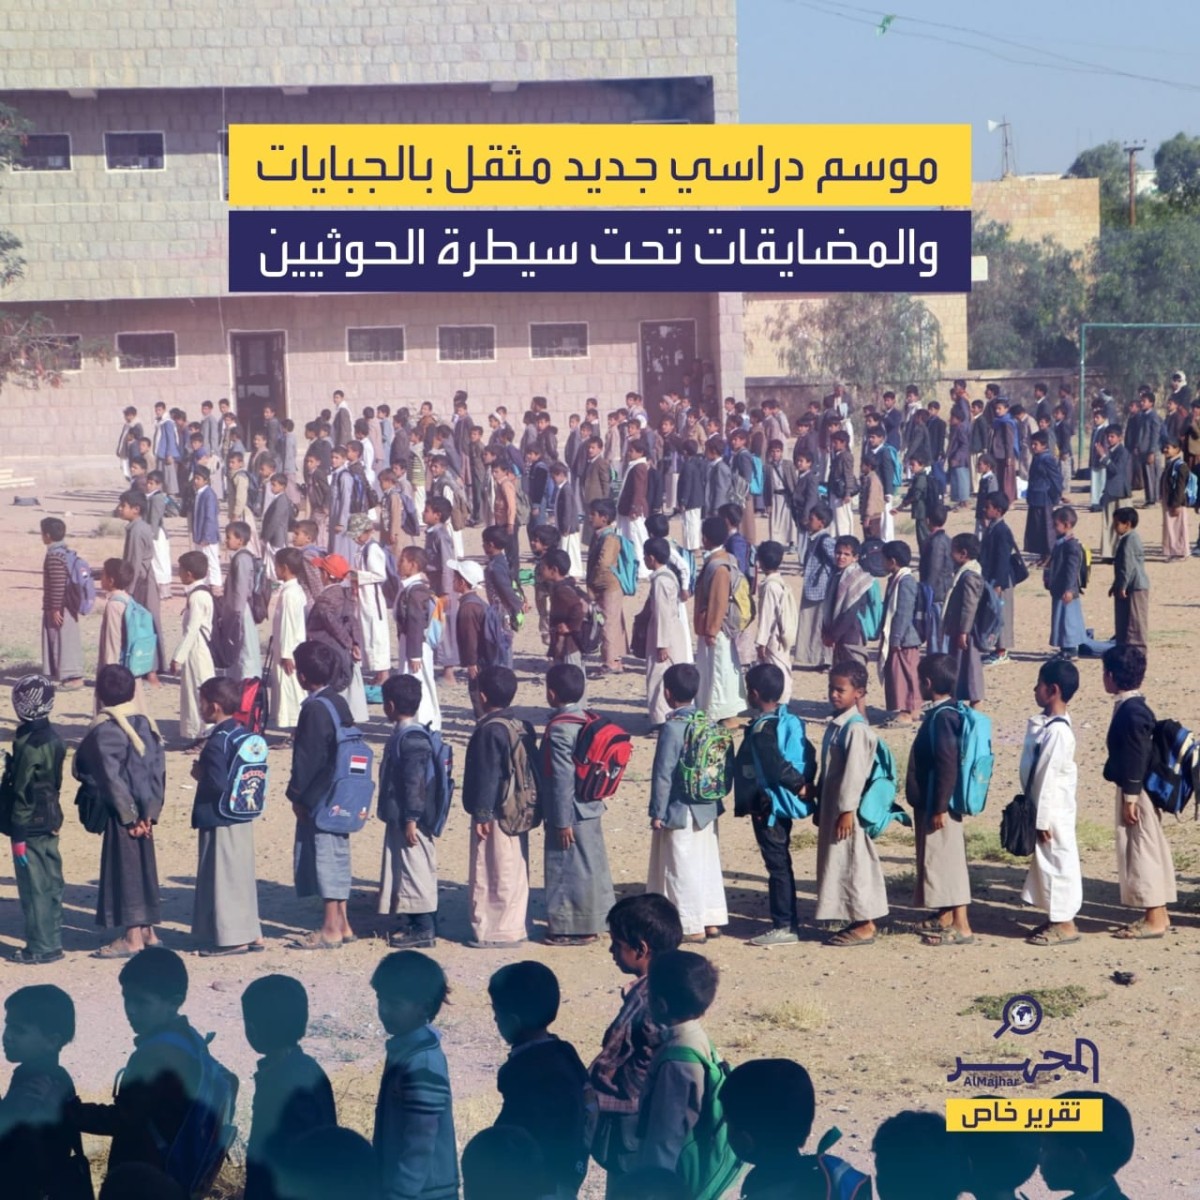 موسم دراسي جديد مثقل بالجبايات والمضايقات تحت سيطرة الحوثيين (تقرير خاص)